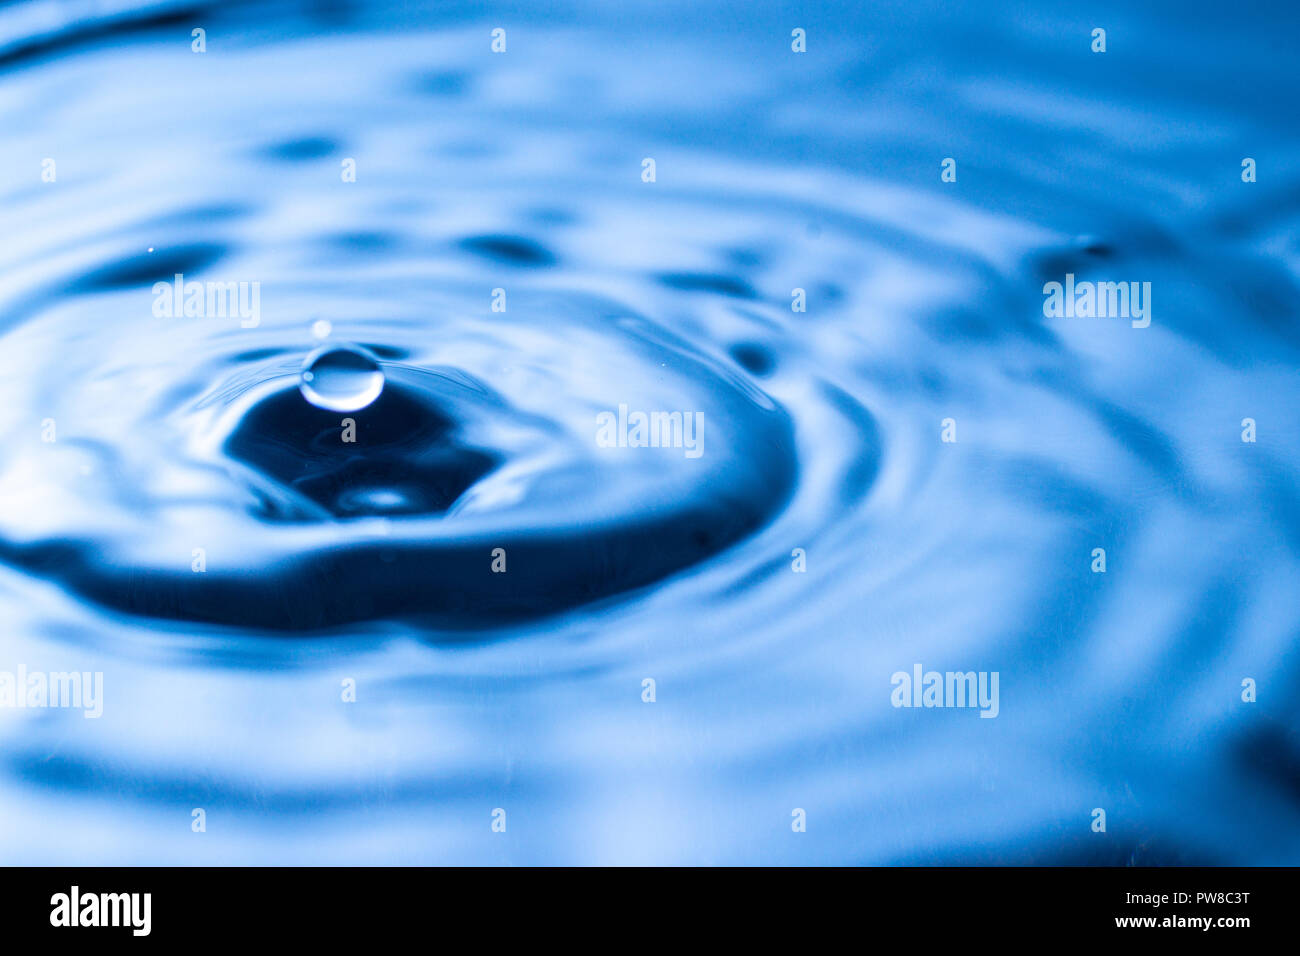 Goutte d'eau dans un verre de couleur bleue Banque D'Images